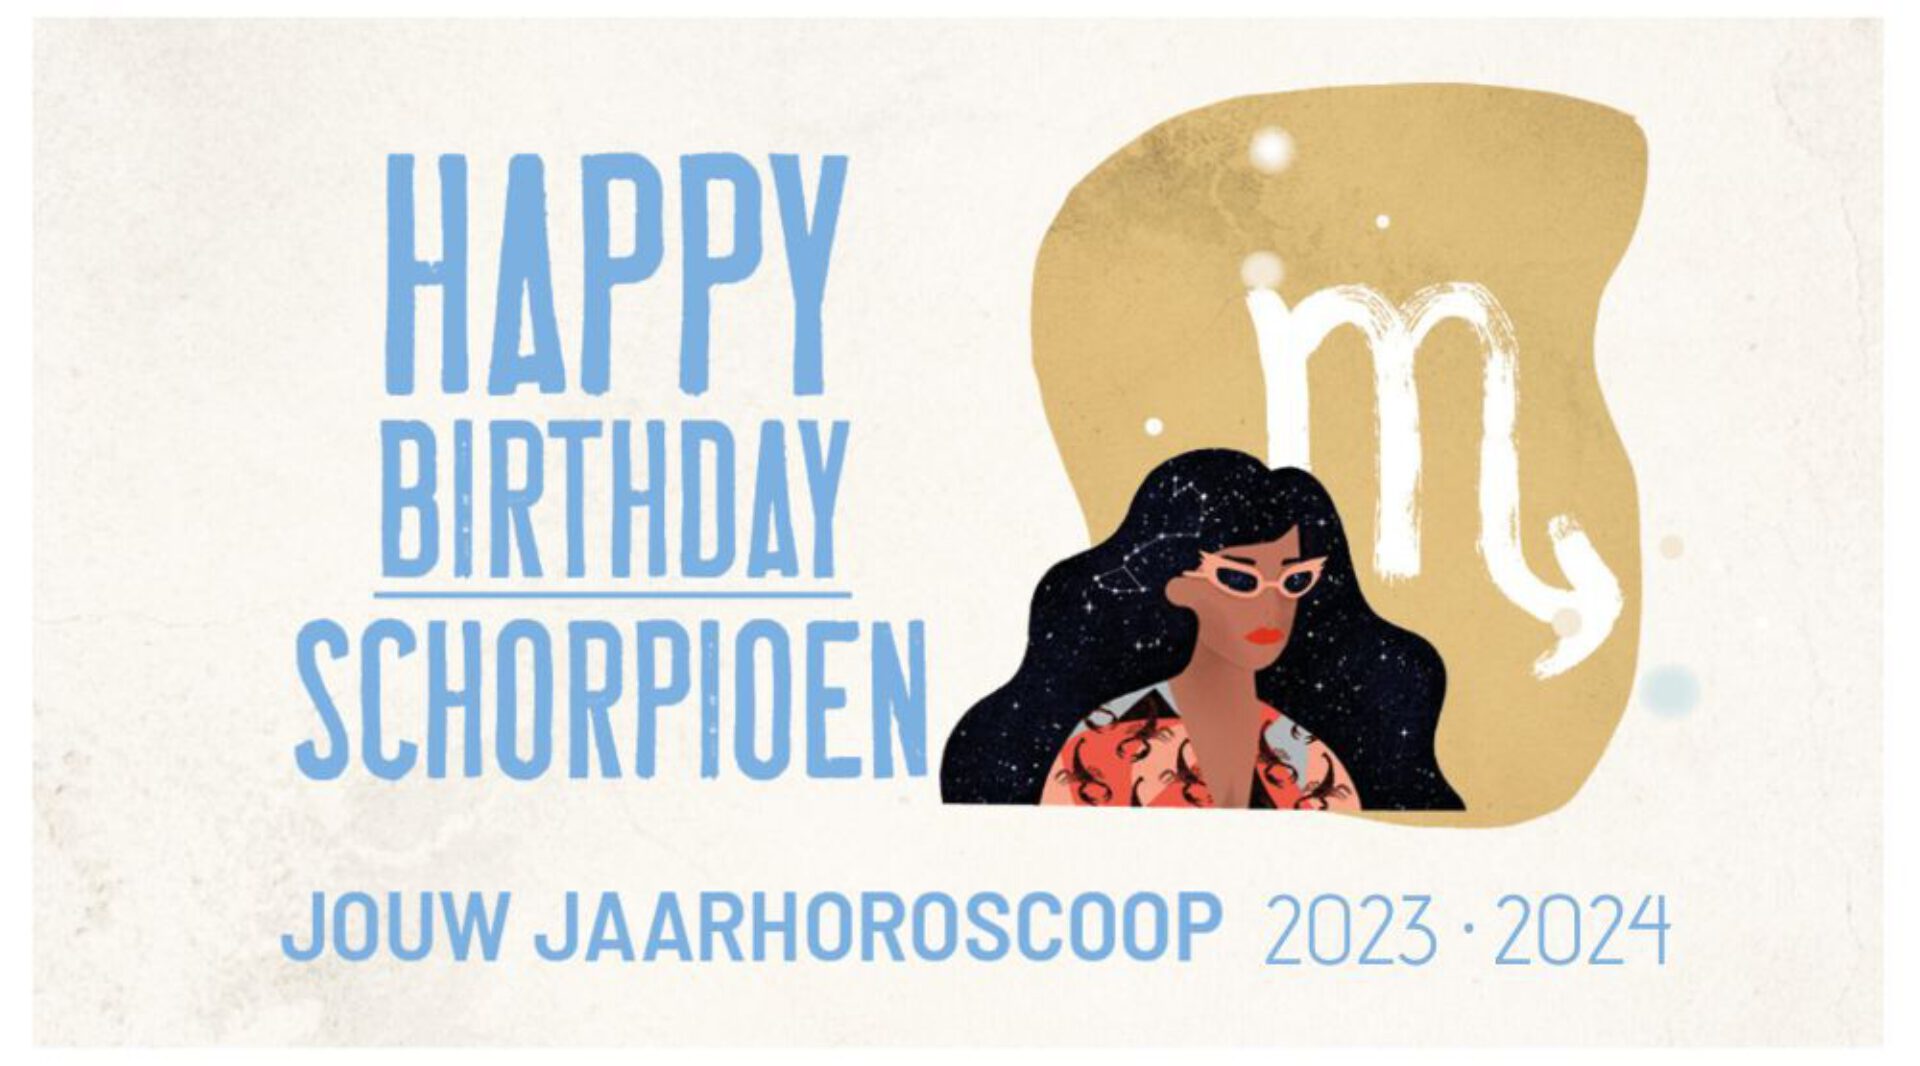 Schorpioen, jouw jaarhoroscoop 2023-2024: gelukkige verjaardag!